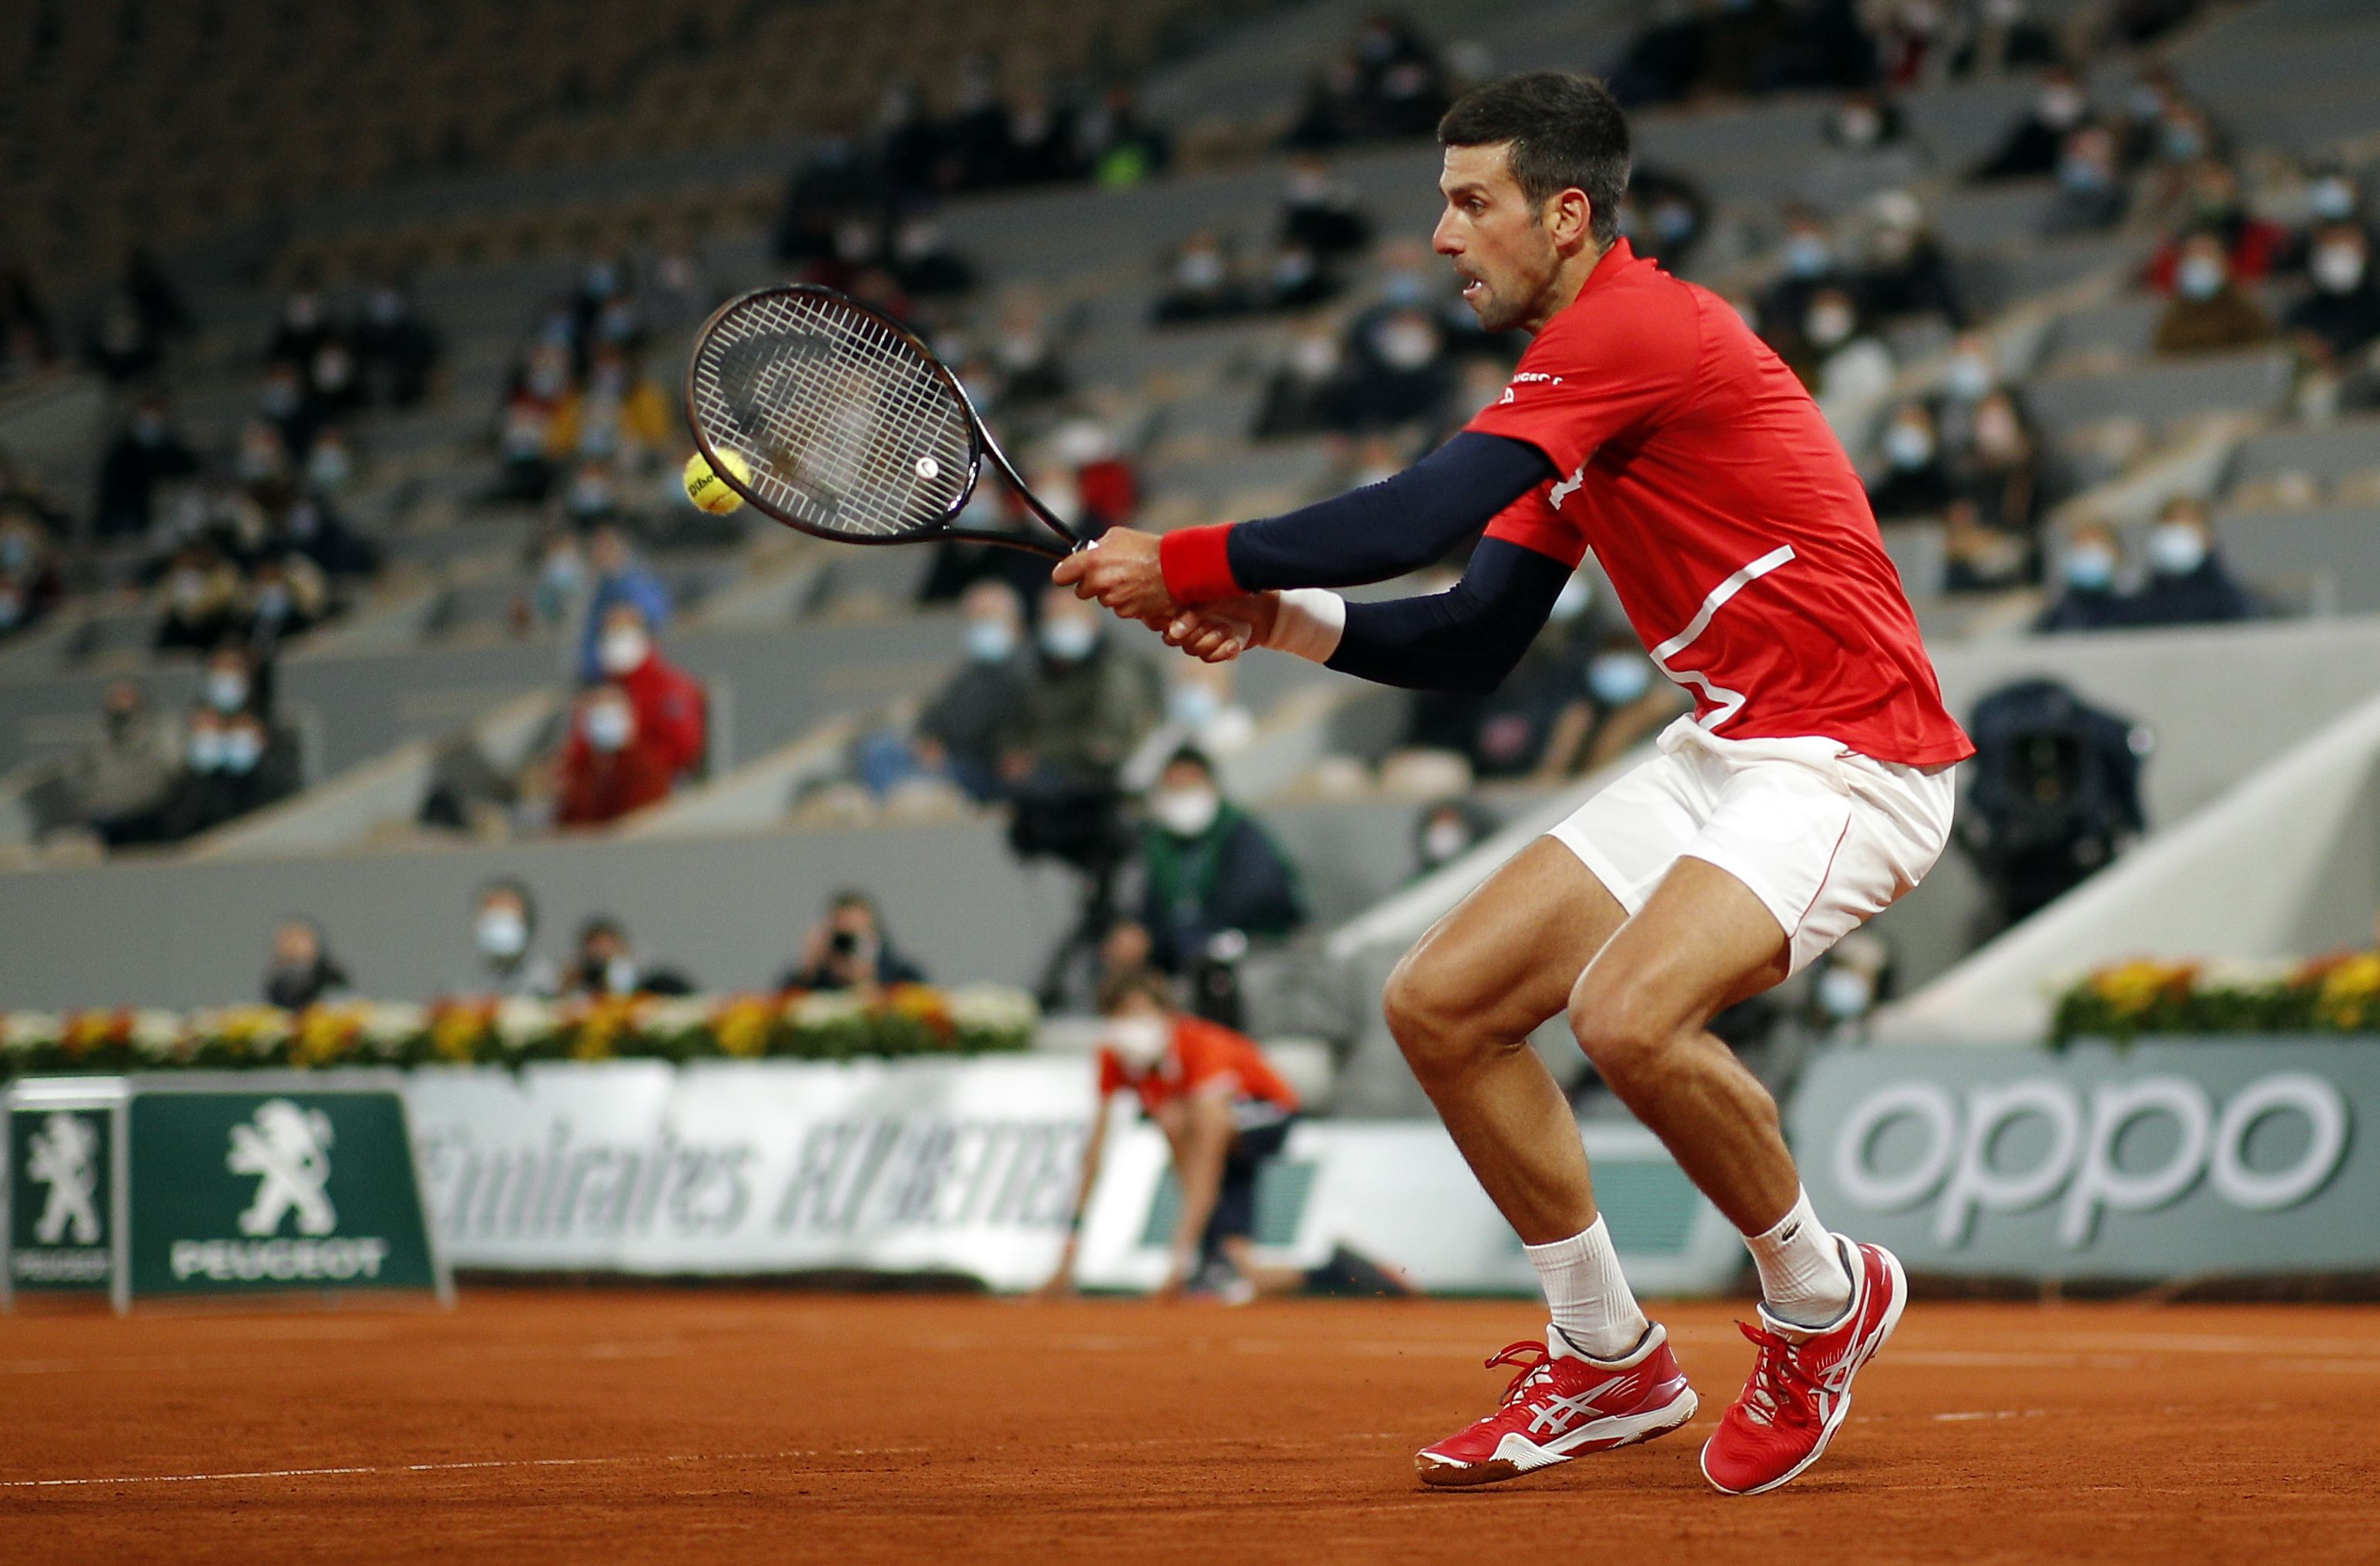 Ilyen volt a kiskorú Djokovics első teniszedzése – videóval